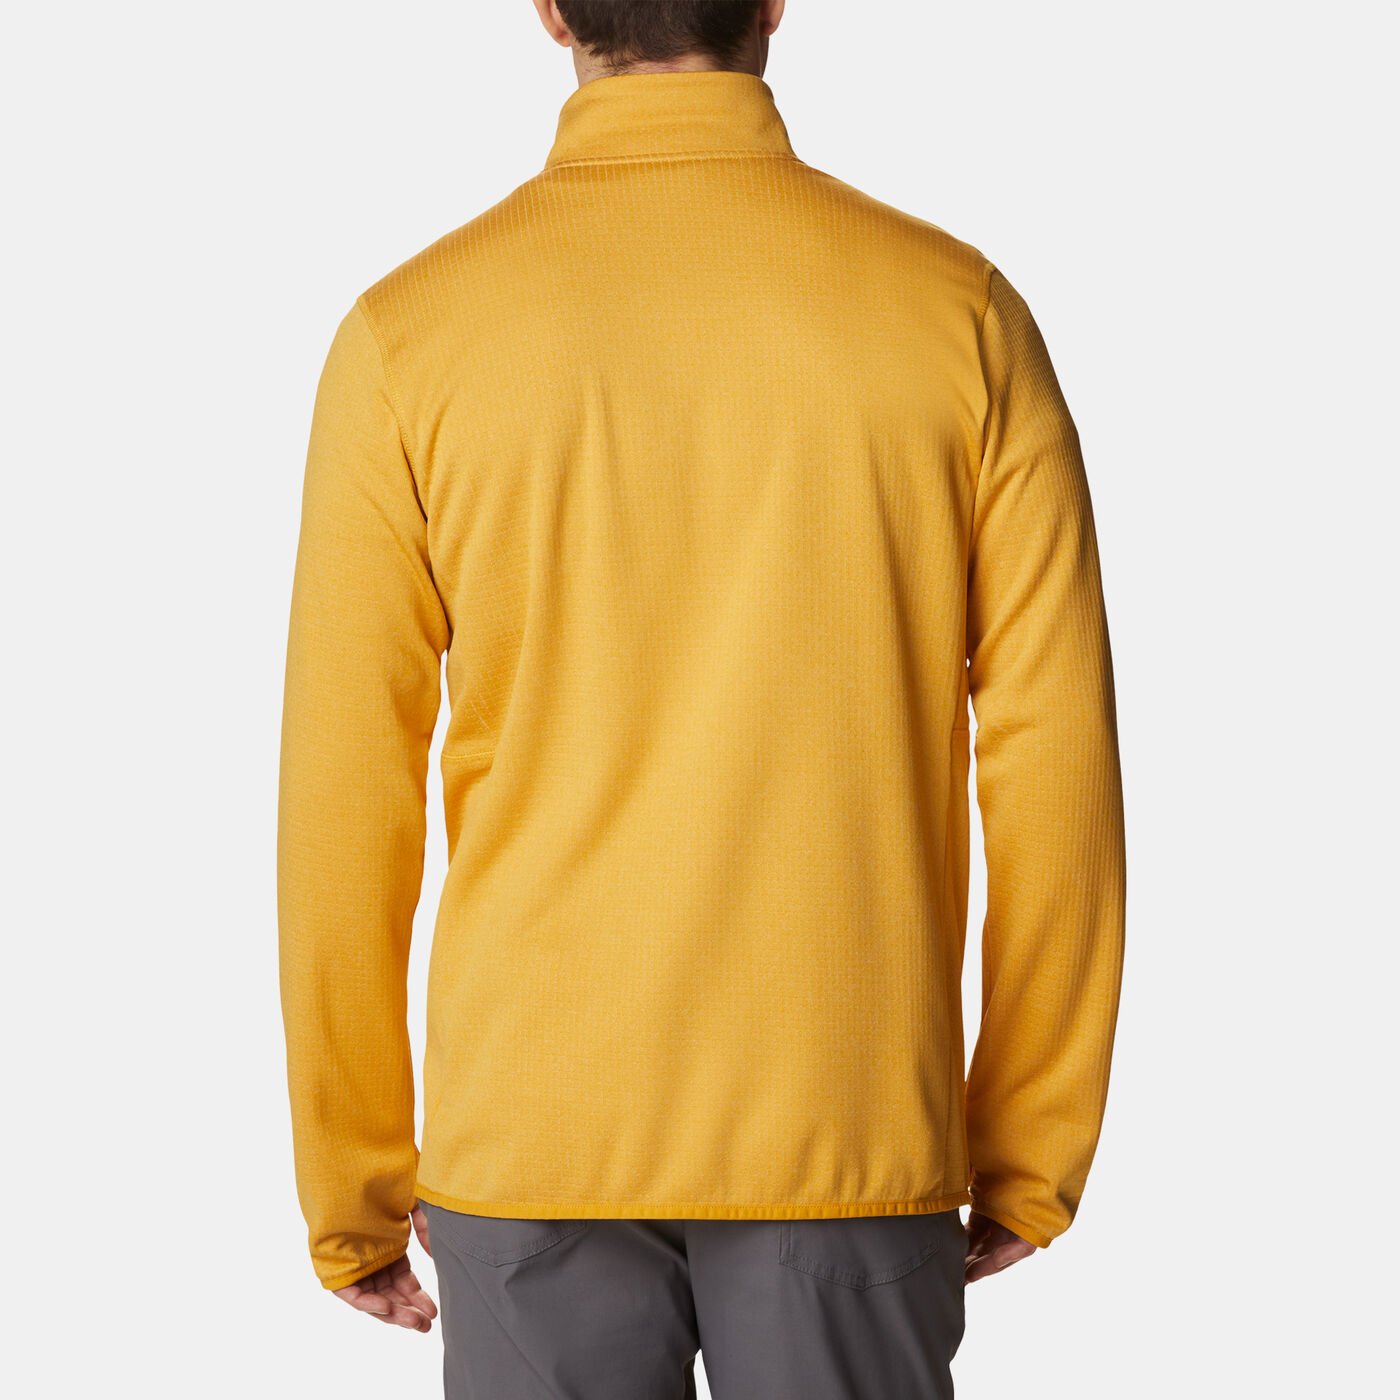 Men's Park View™ Full Zip Fleece Jacket